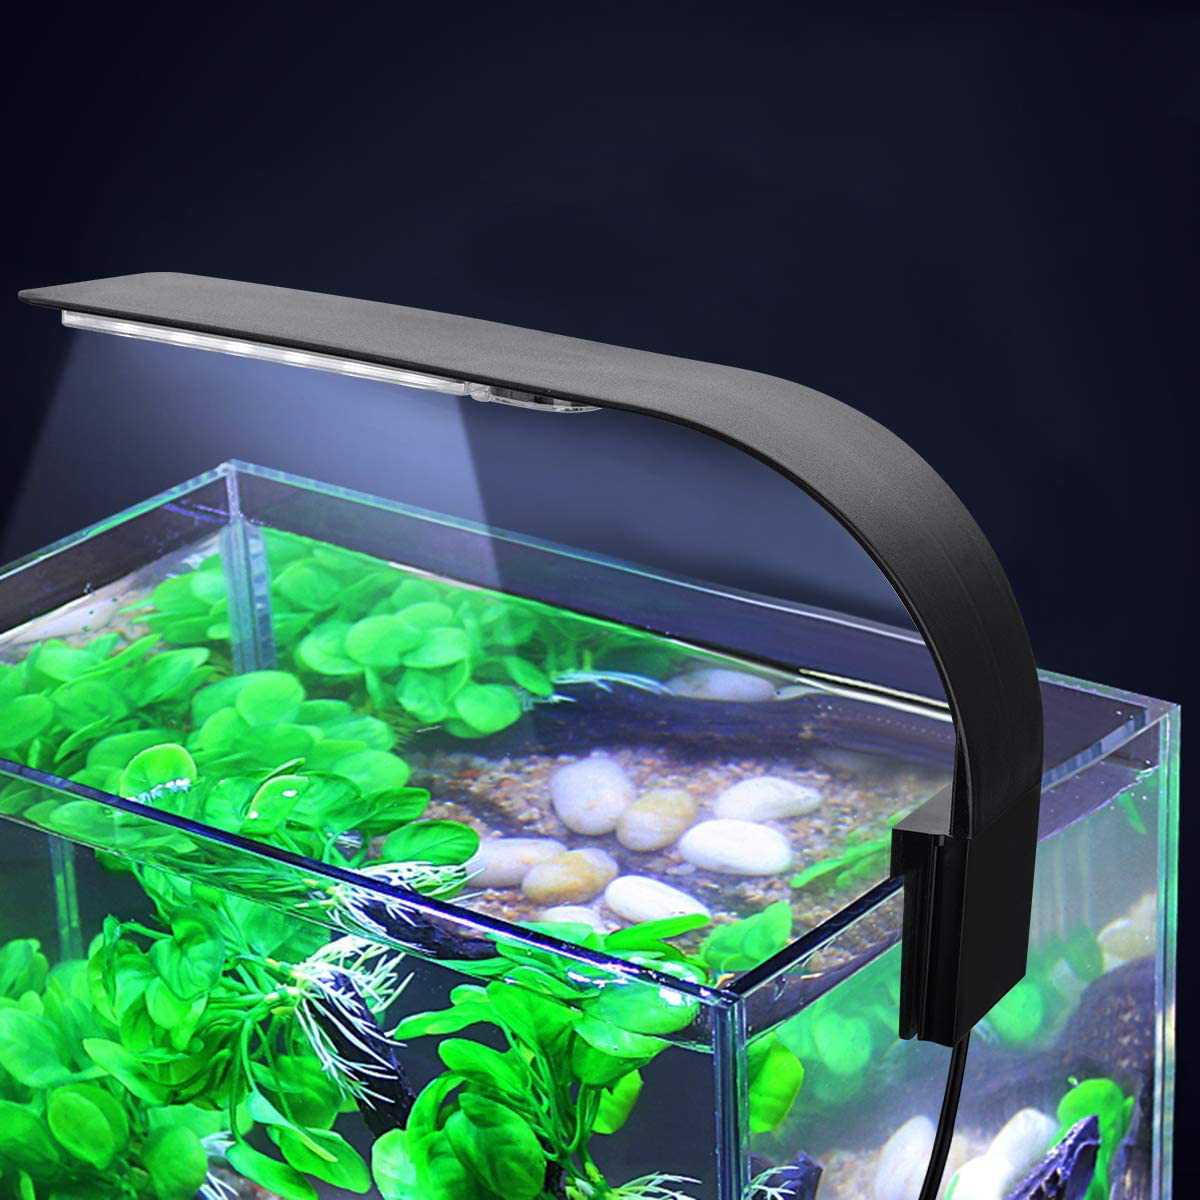 WEAVERBIRD Aquarium Light X5 Virgo 24 LED Aquarium Light 10W Clip-On Lamp Aquatic Plant Lighting